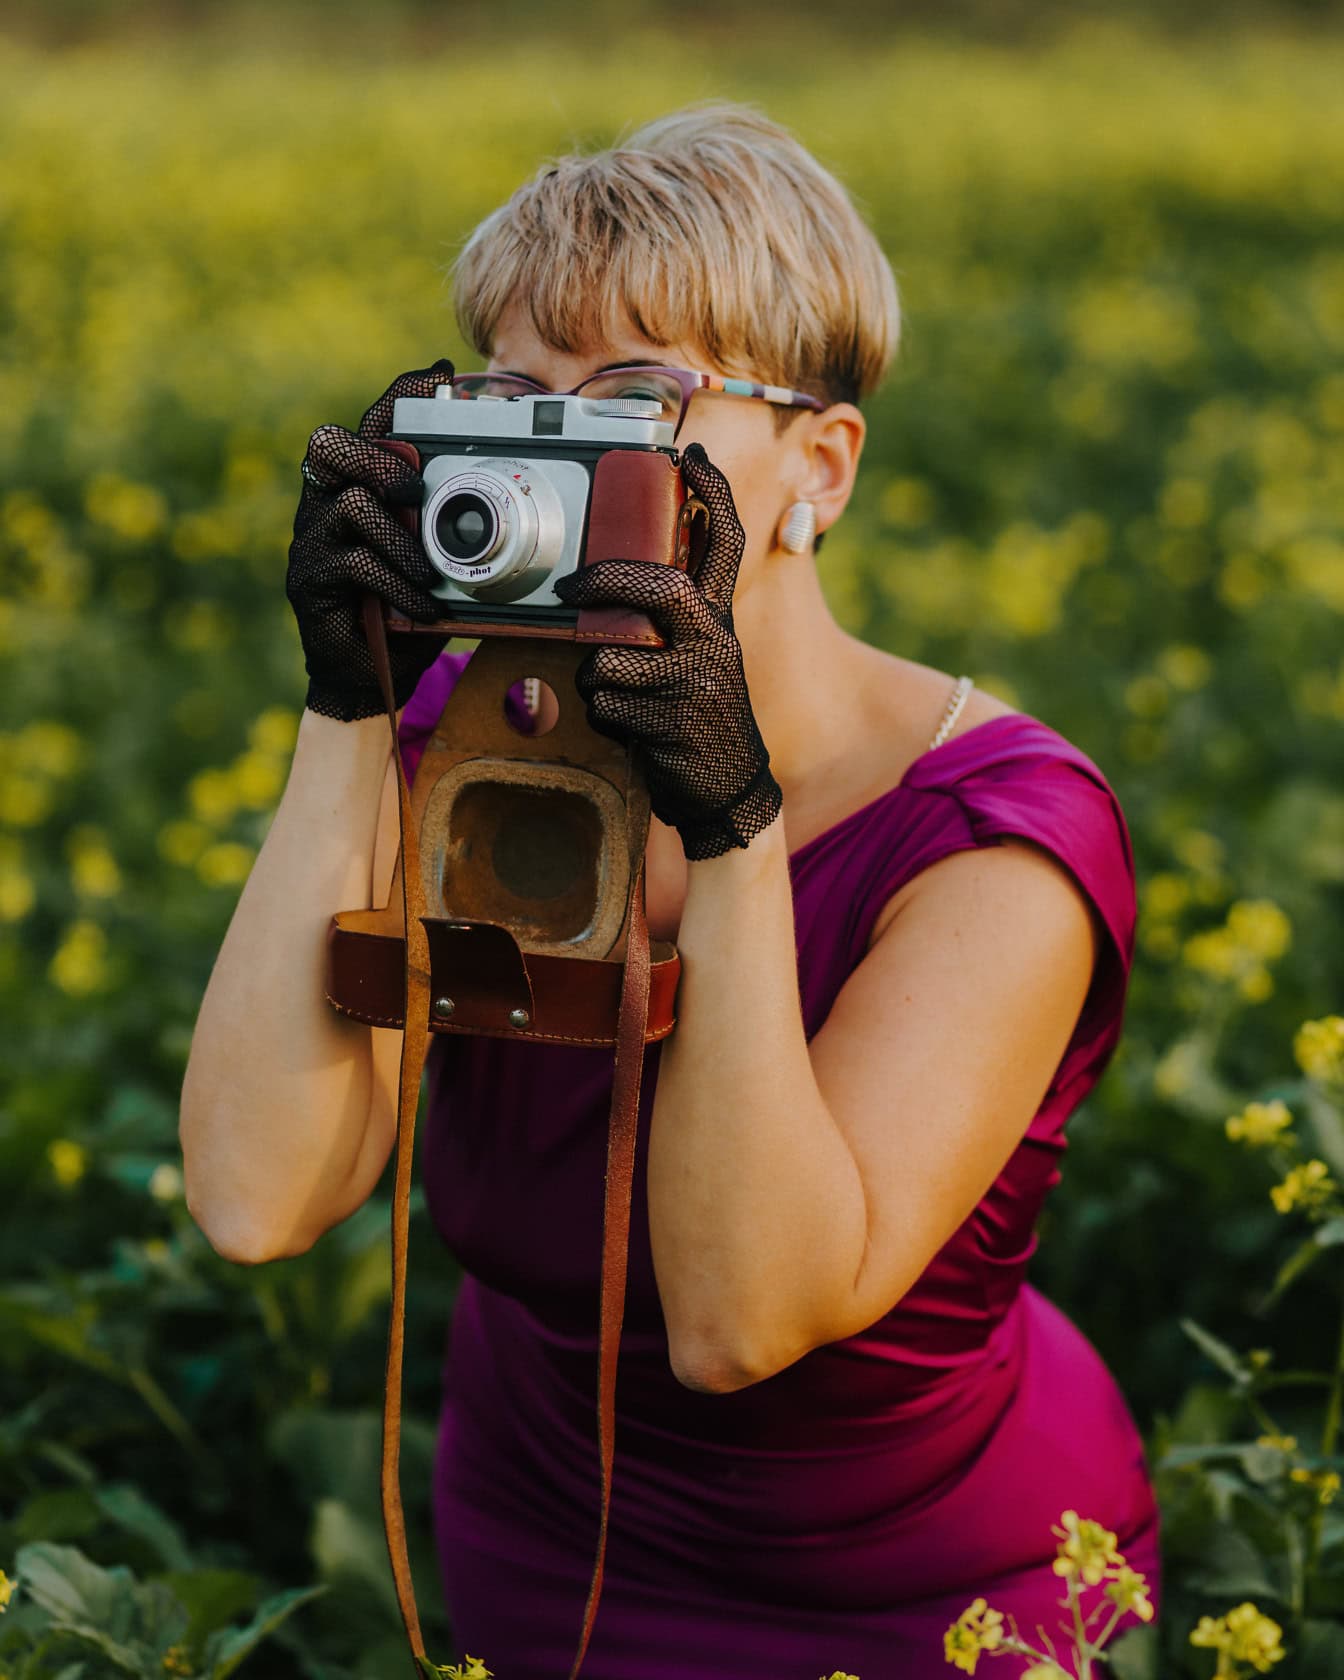 Glamorös damfotograf med kort blond frisyr i purpurfärgad klänning medan du gör fotografi med en analog fotokamera